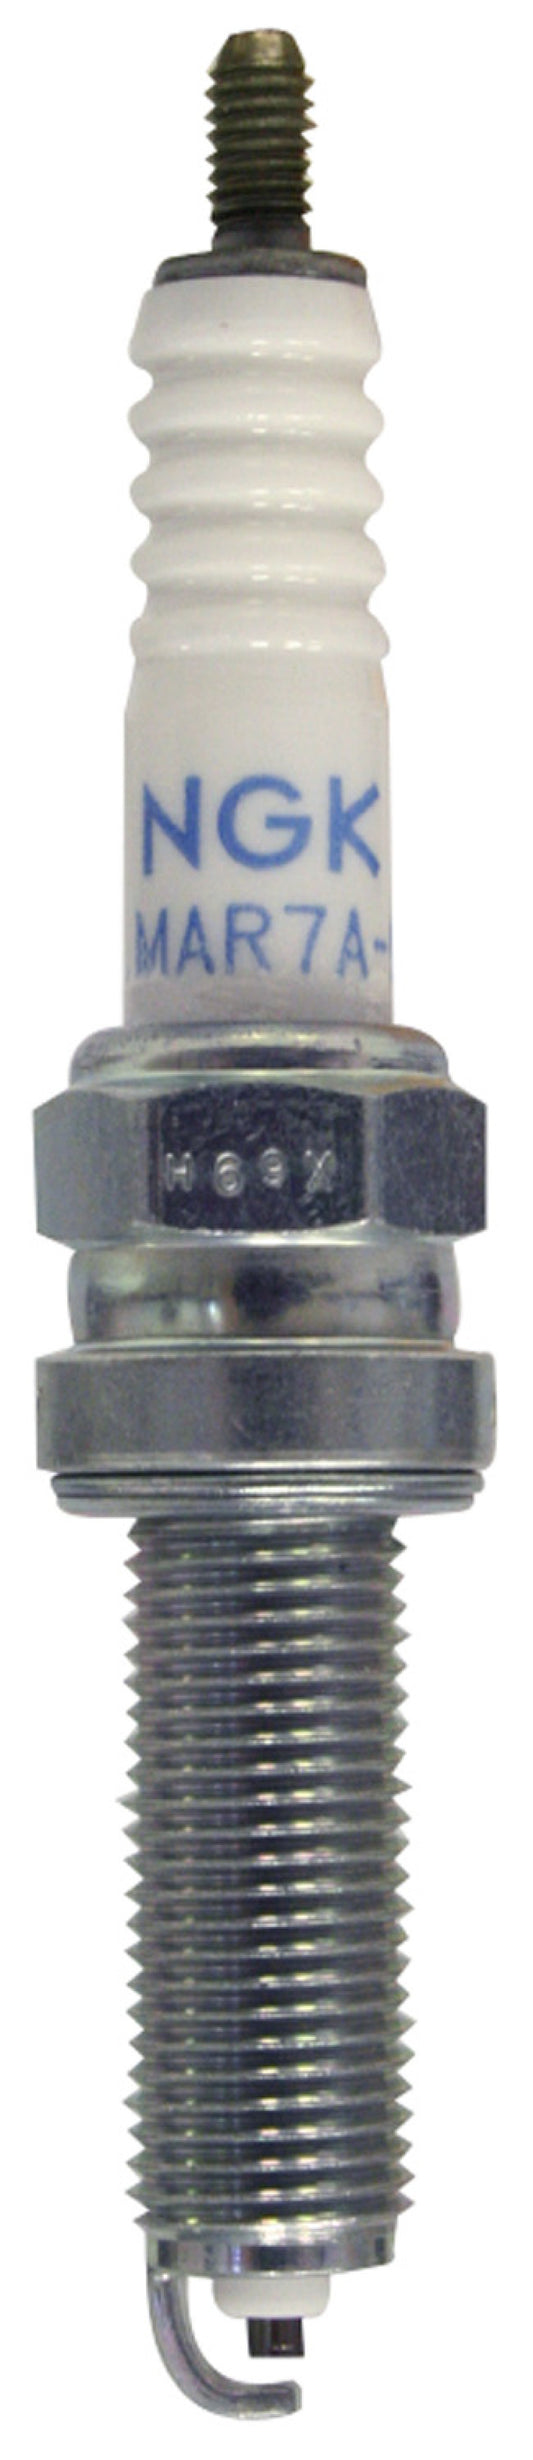 NGK Standard Spark Plug Box of 10 (LMAR7A-9)